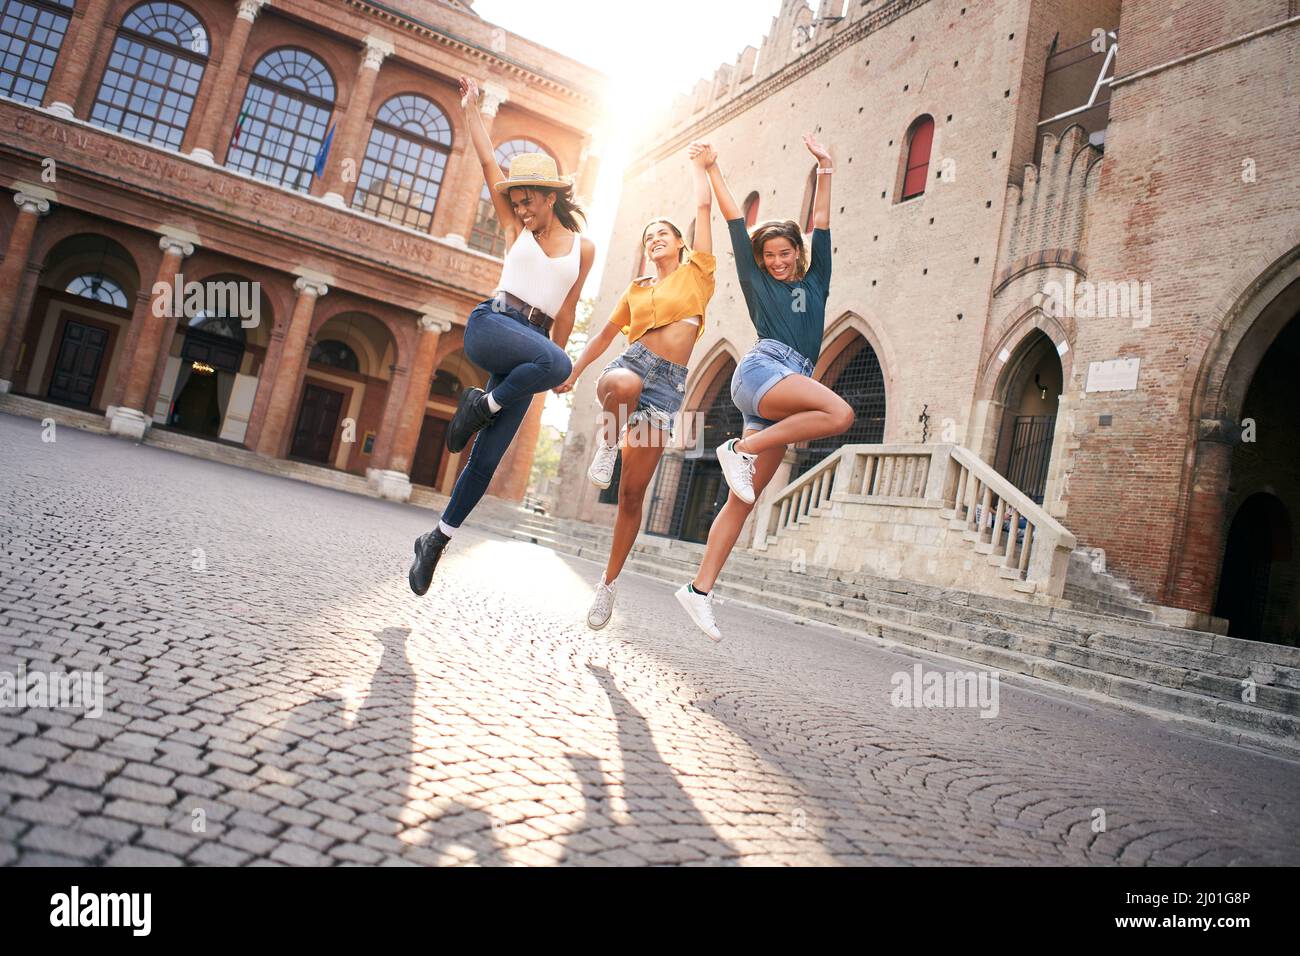 Des femmes heureuses qui s'amusent ensemble à Venise. Trois jeunes femmes sautent en tenant hans, groupe multiracial rire ensemble. Style de vie, liberté, célébration Banque D'Images